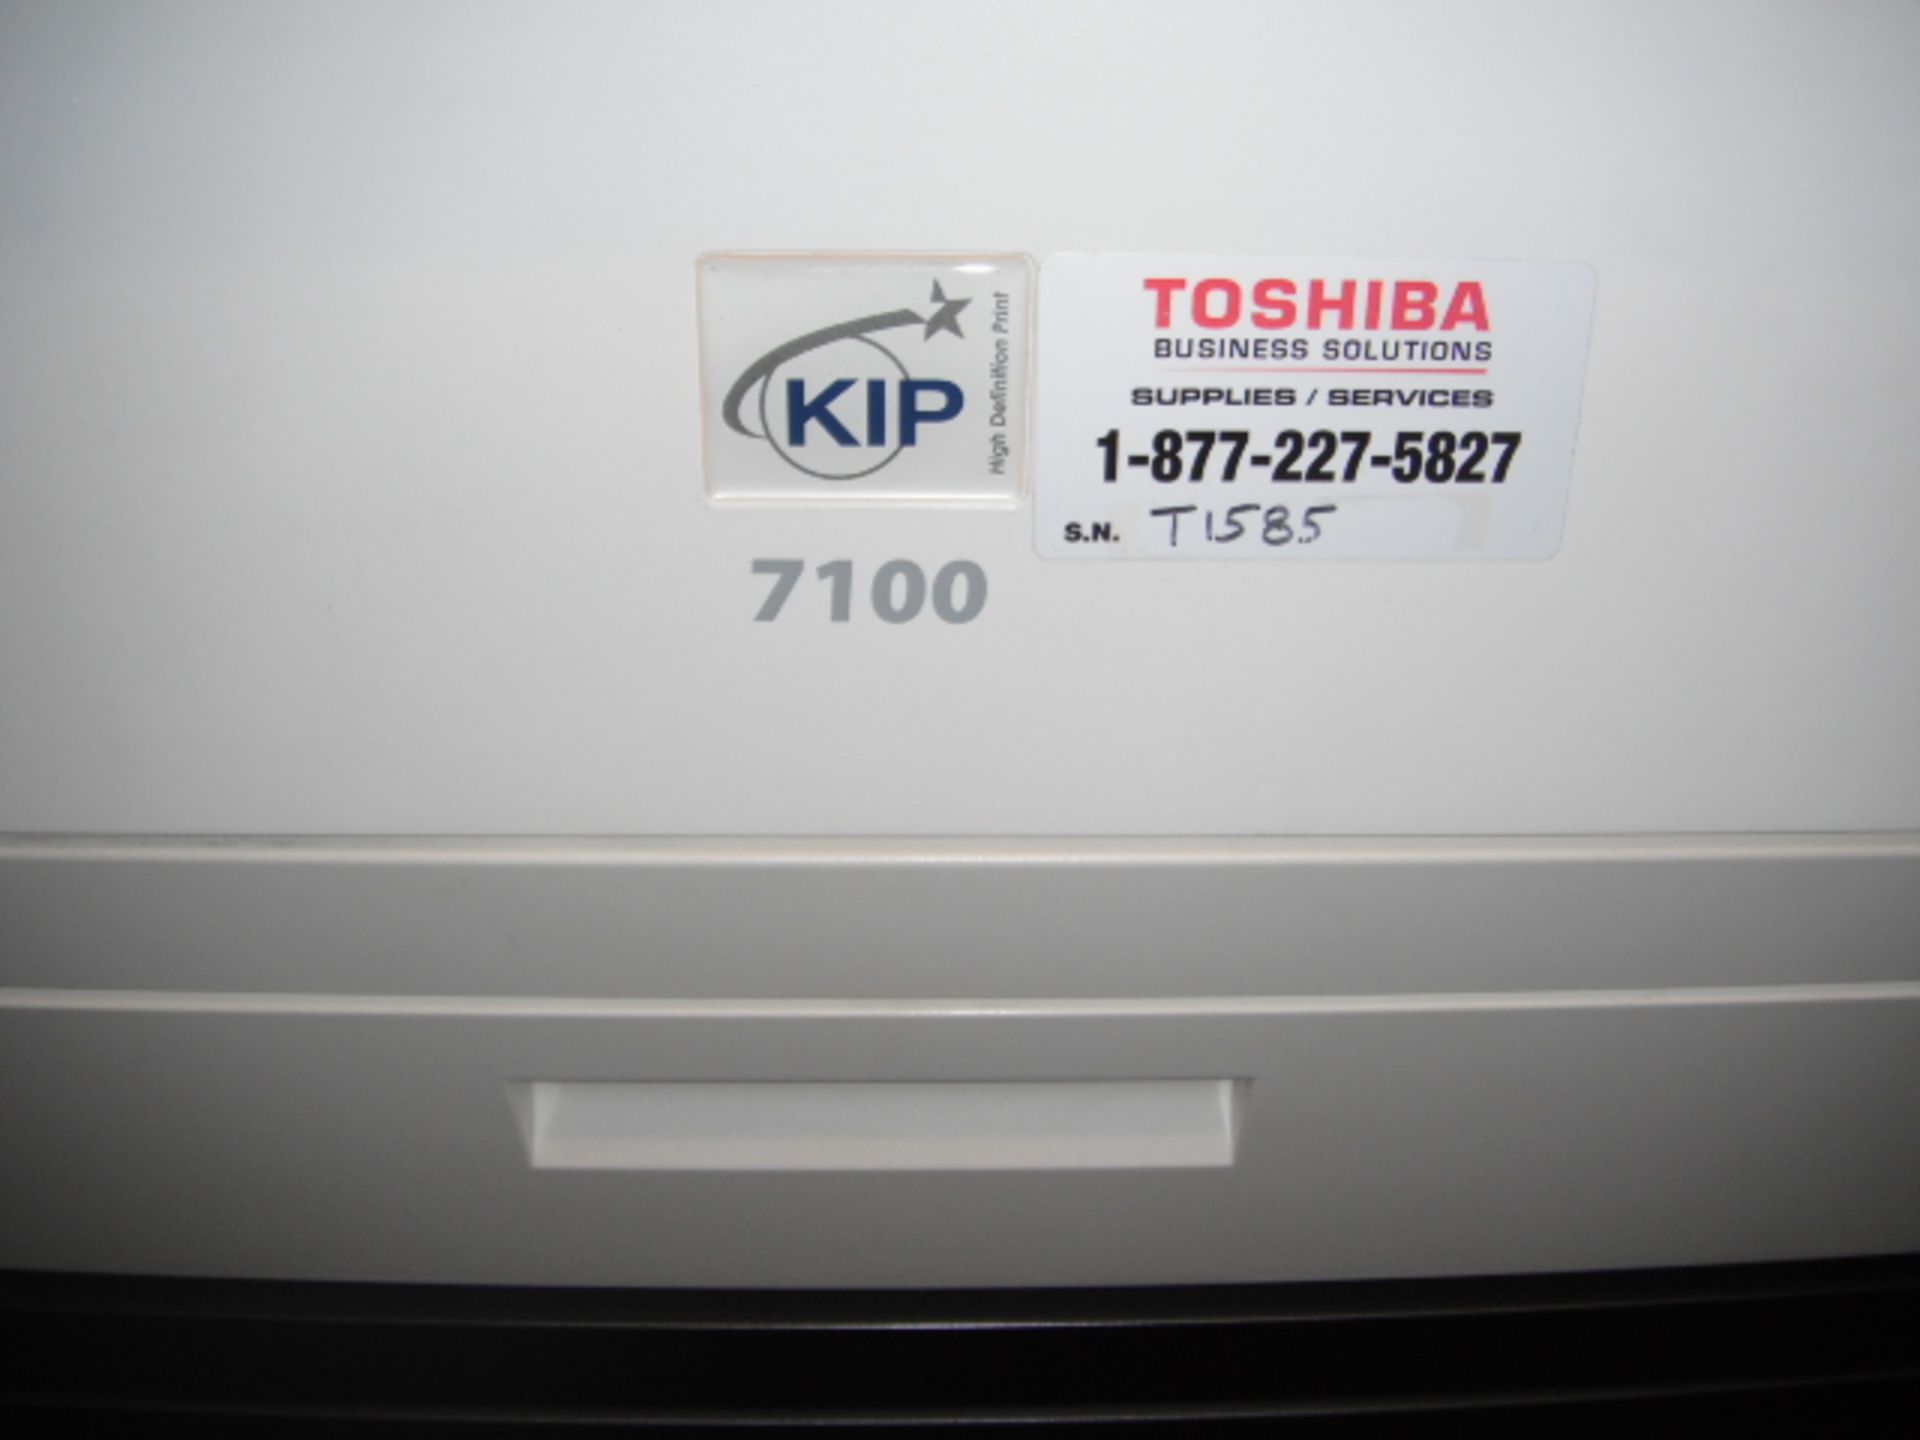 Kip 7100 Multifunction Printer (43011) - Image 3 of 3